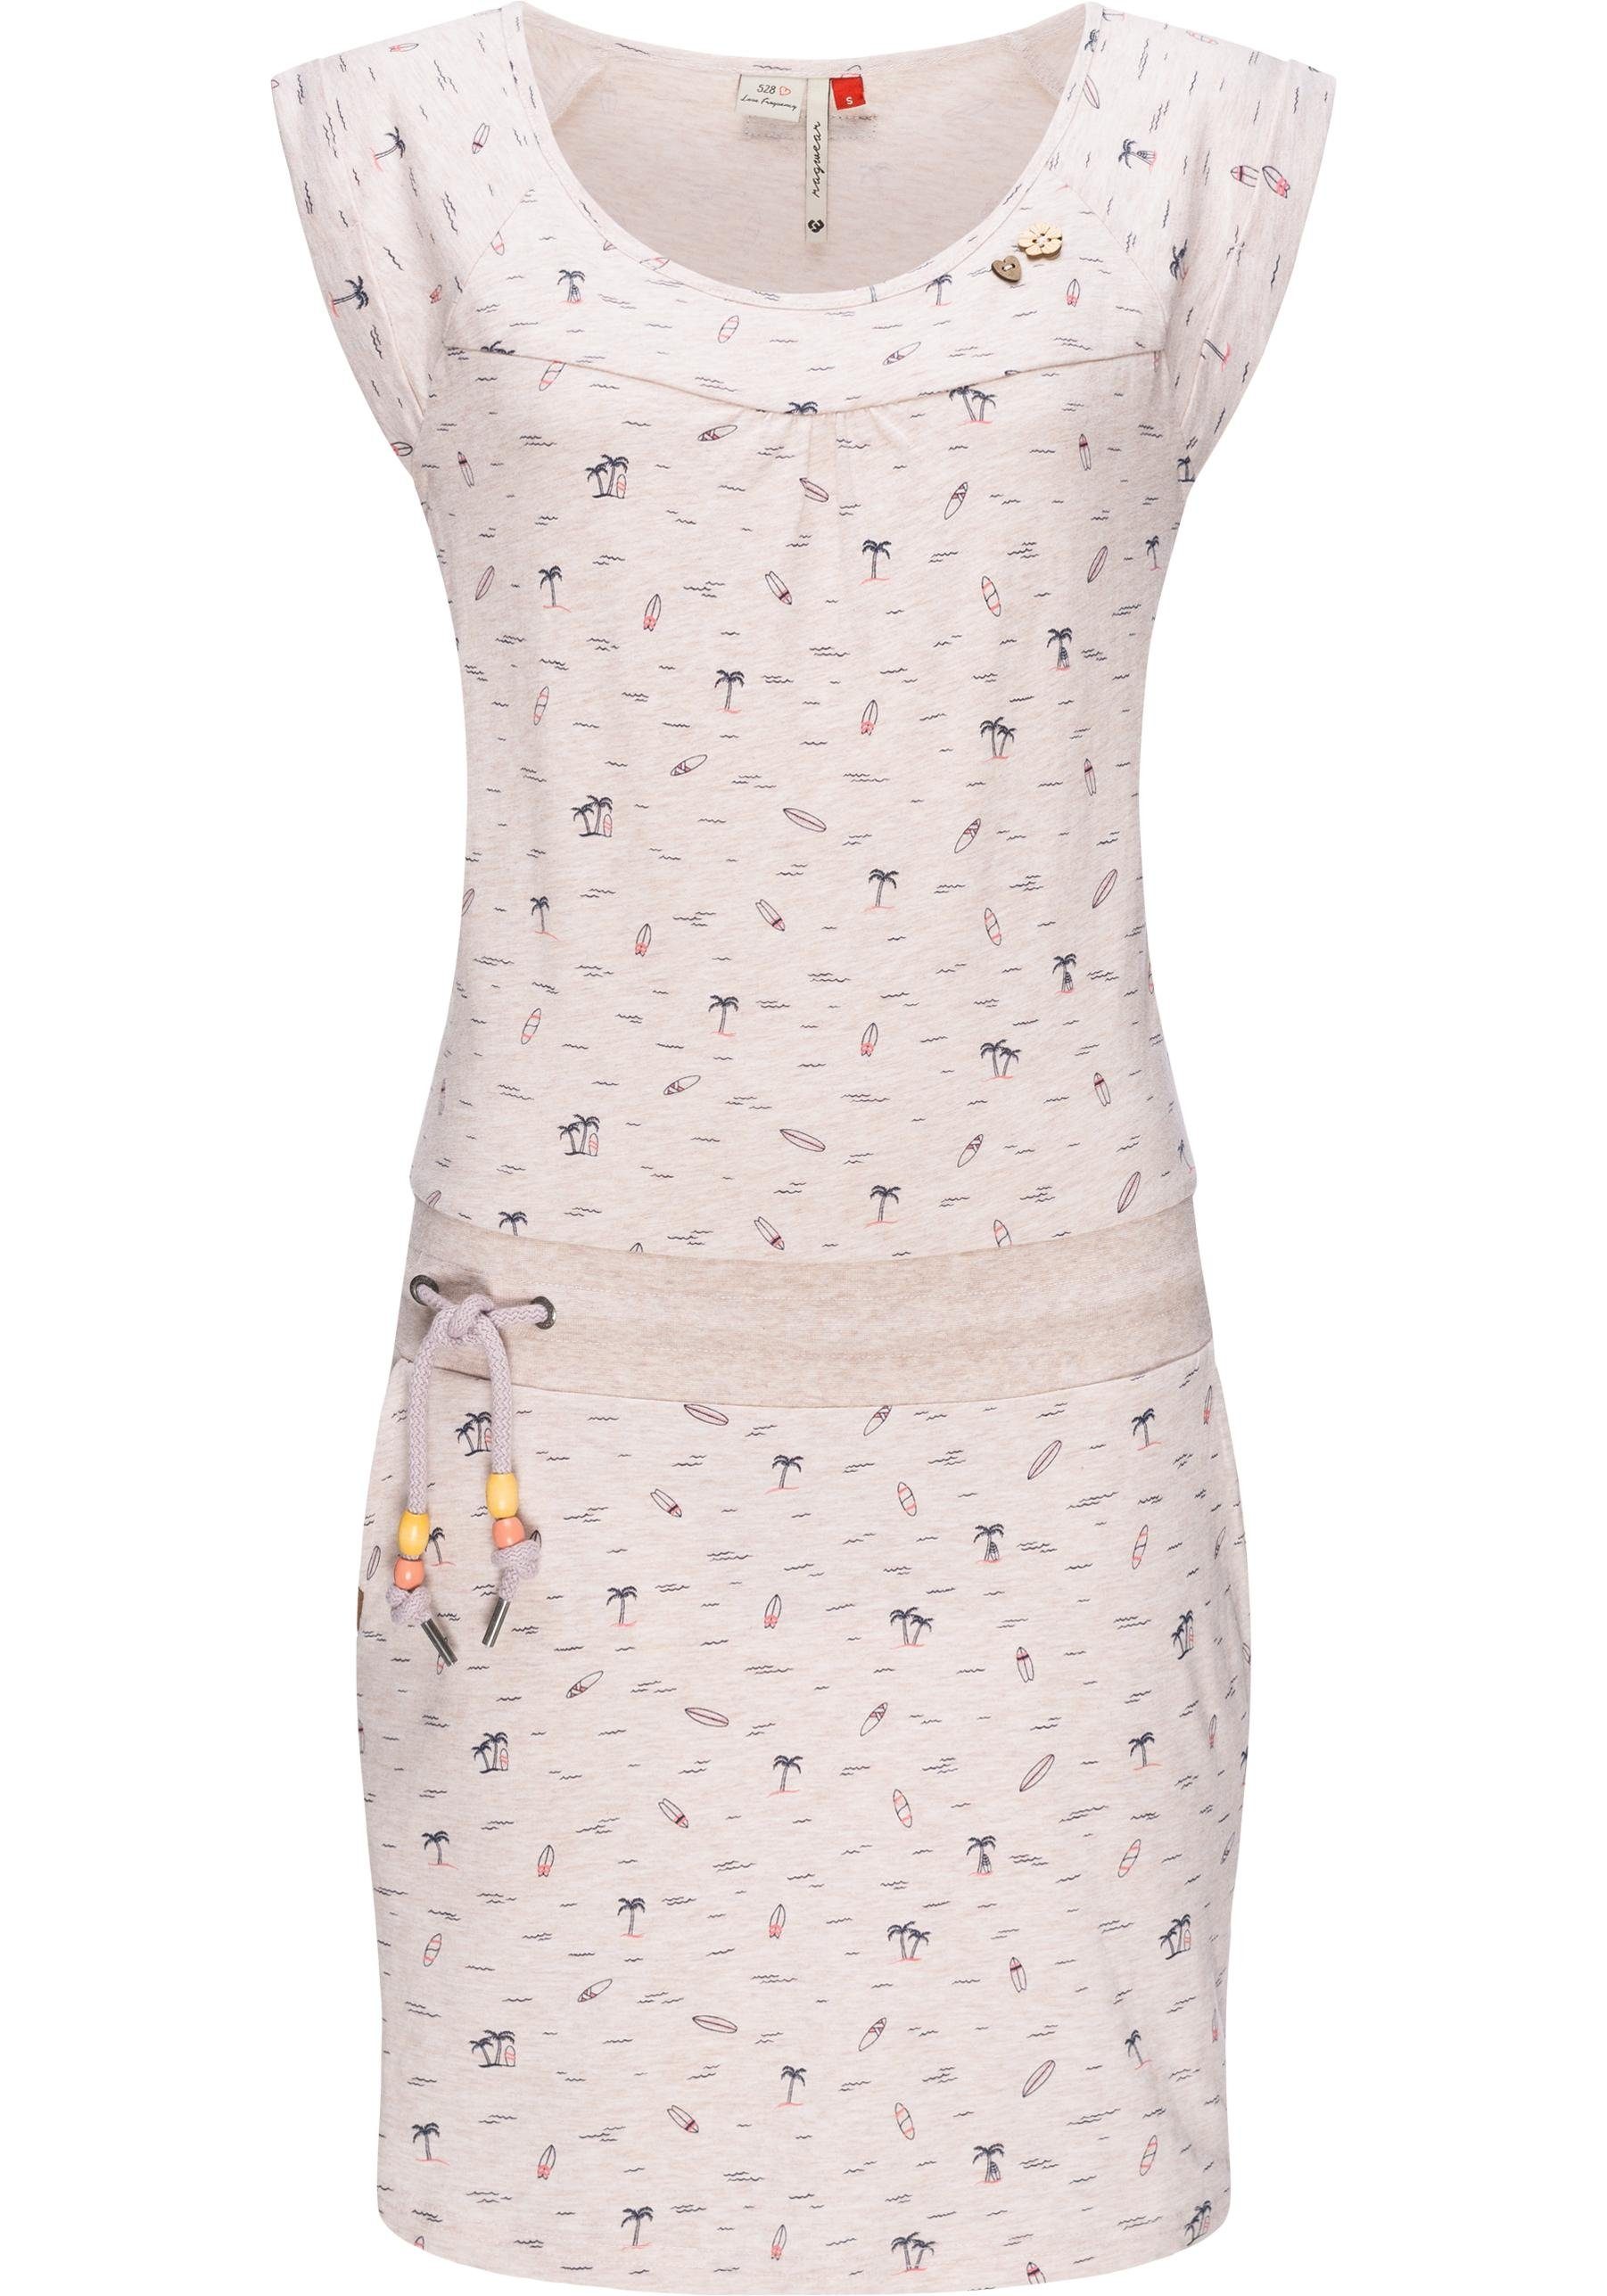 Ragwear Sommerkleid Penelope mit Print, hergestellt Hochwertige u. leichtes Qualität, Verarbeitung Baumwoll vegan 100% Kleid